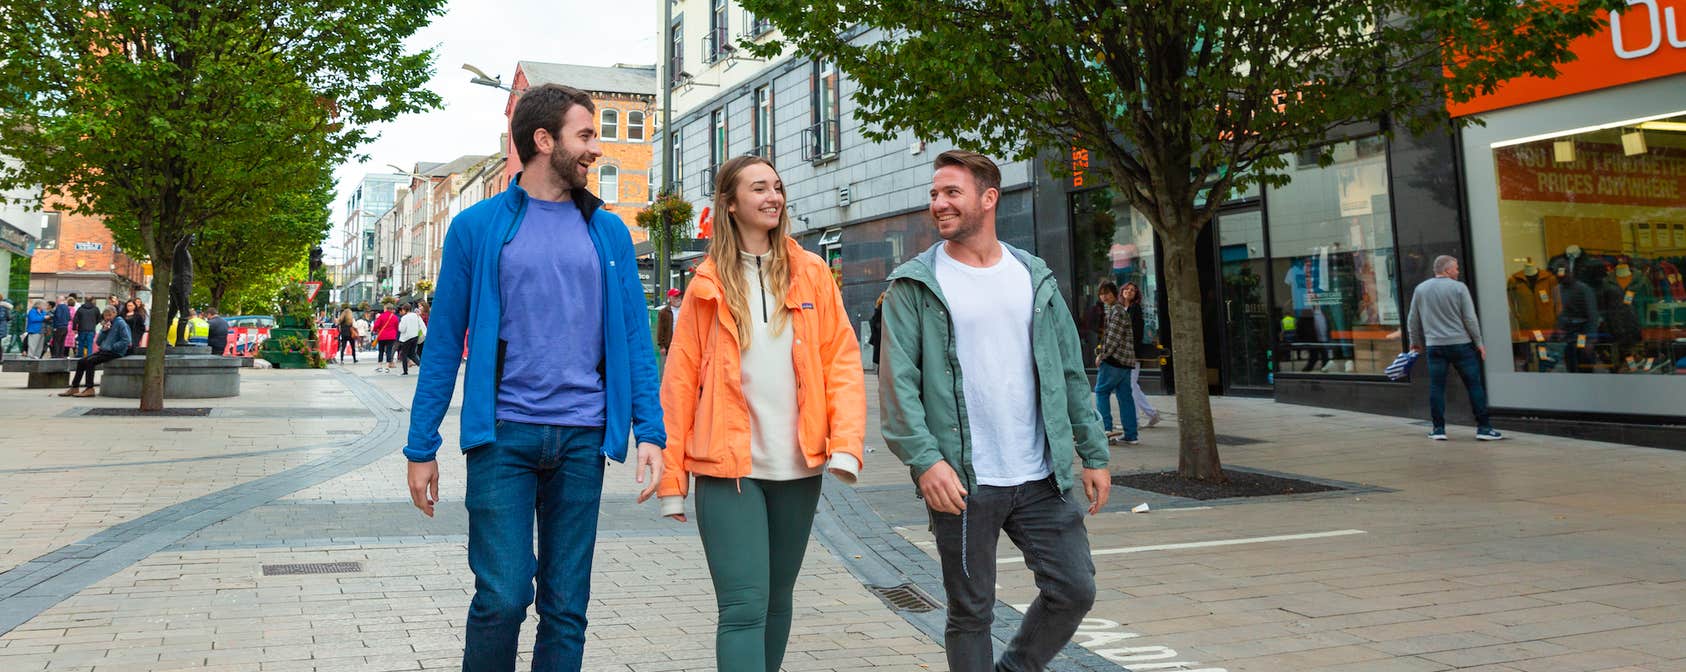 People walking through Limerick city